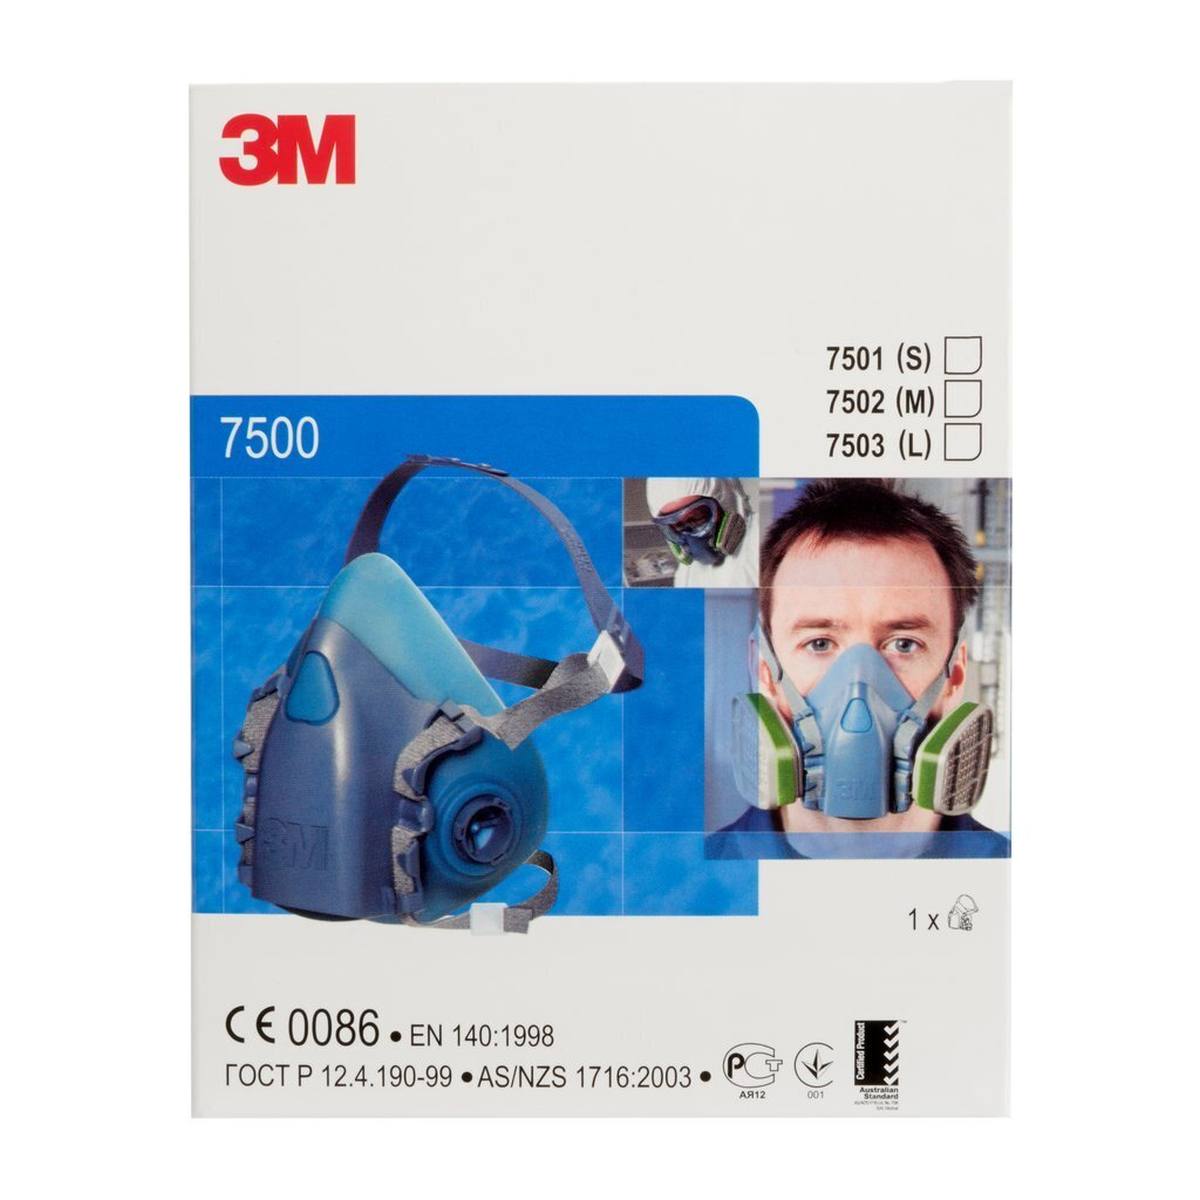 3M 7501S Media máscara cuerpo silicona / poliéster termoplástico talla S